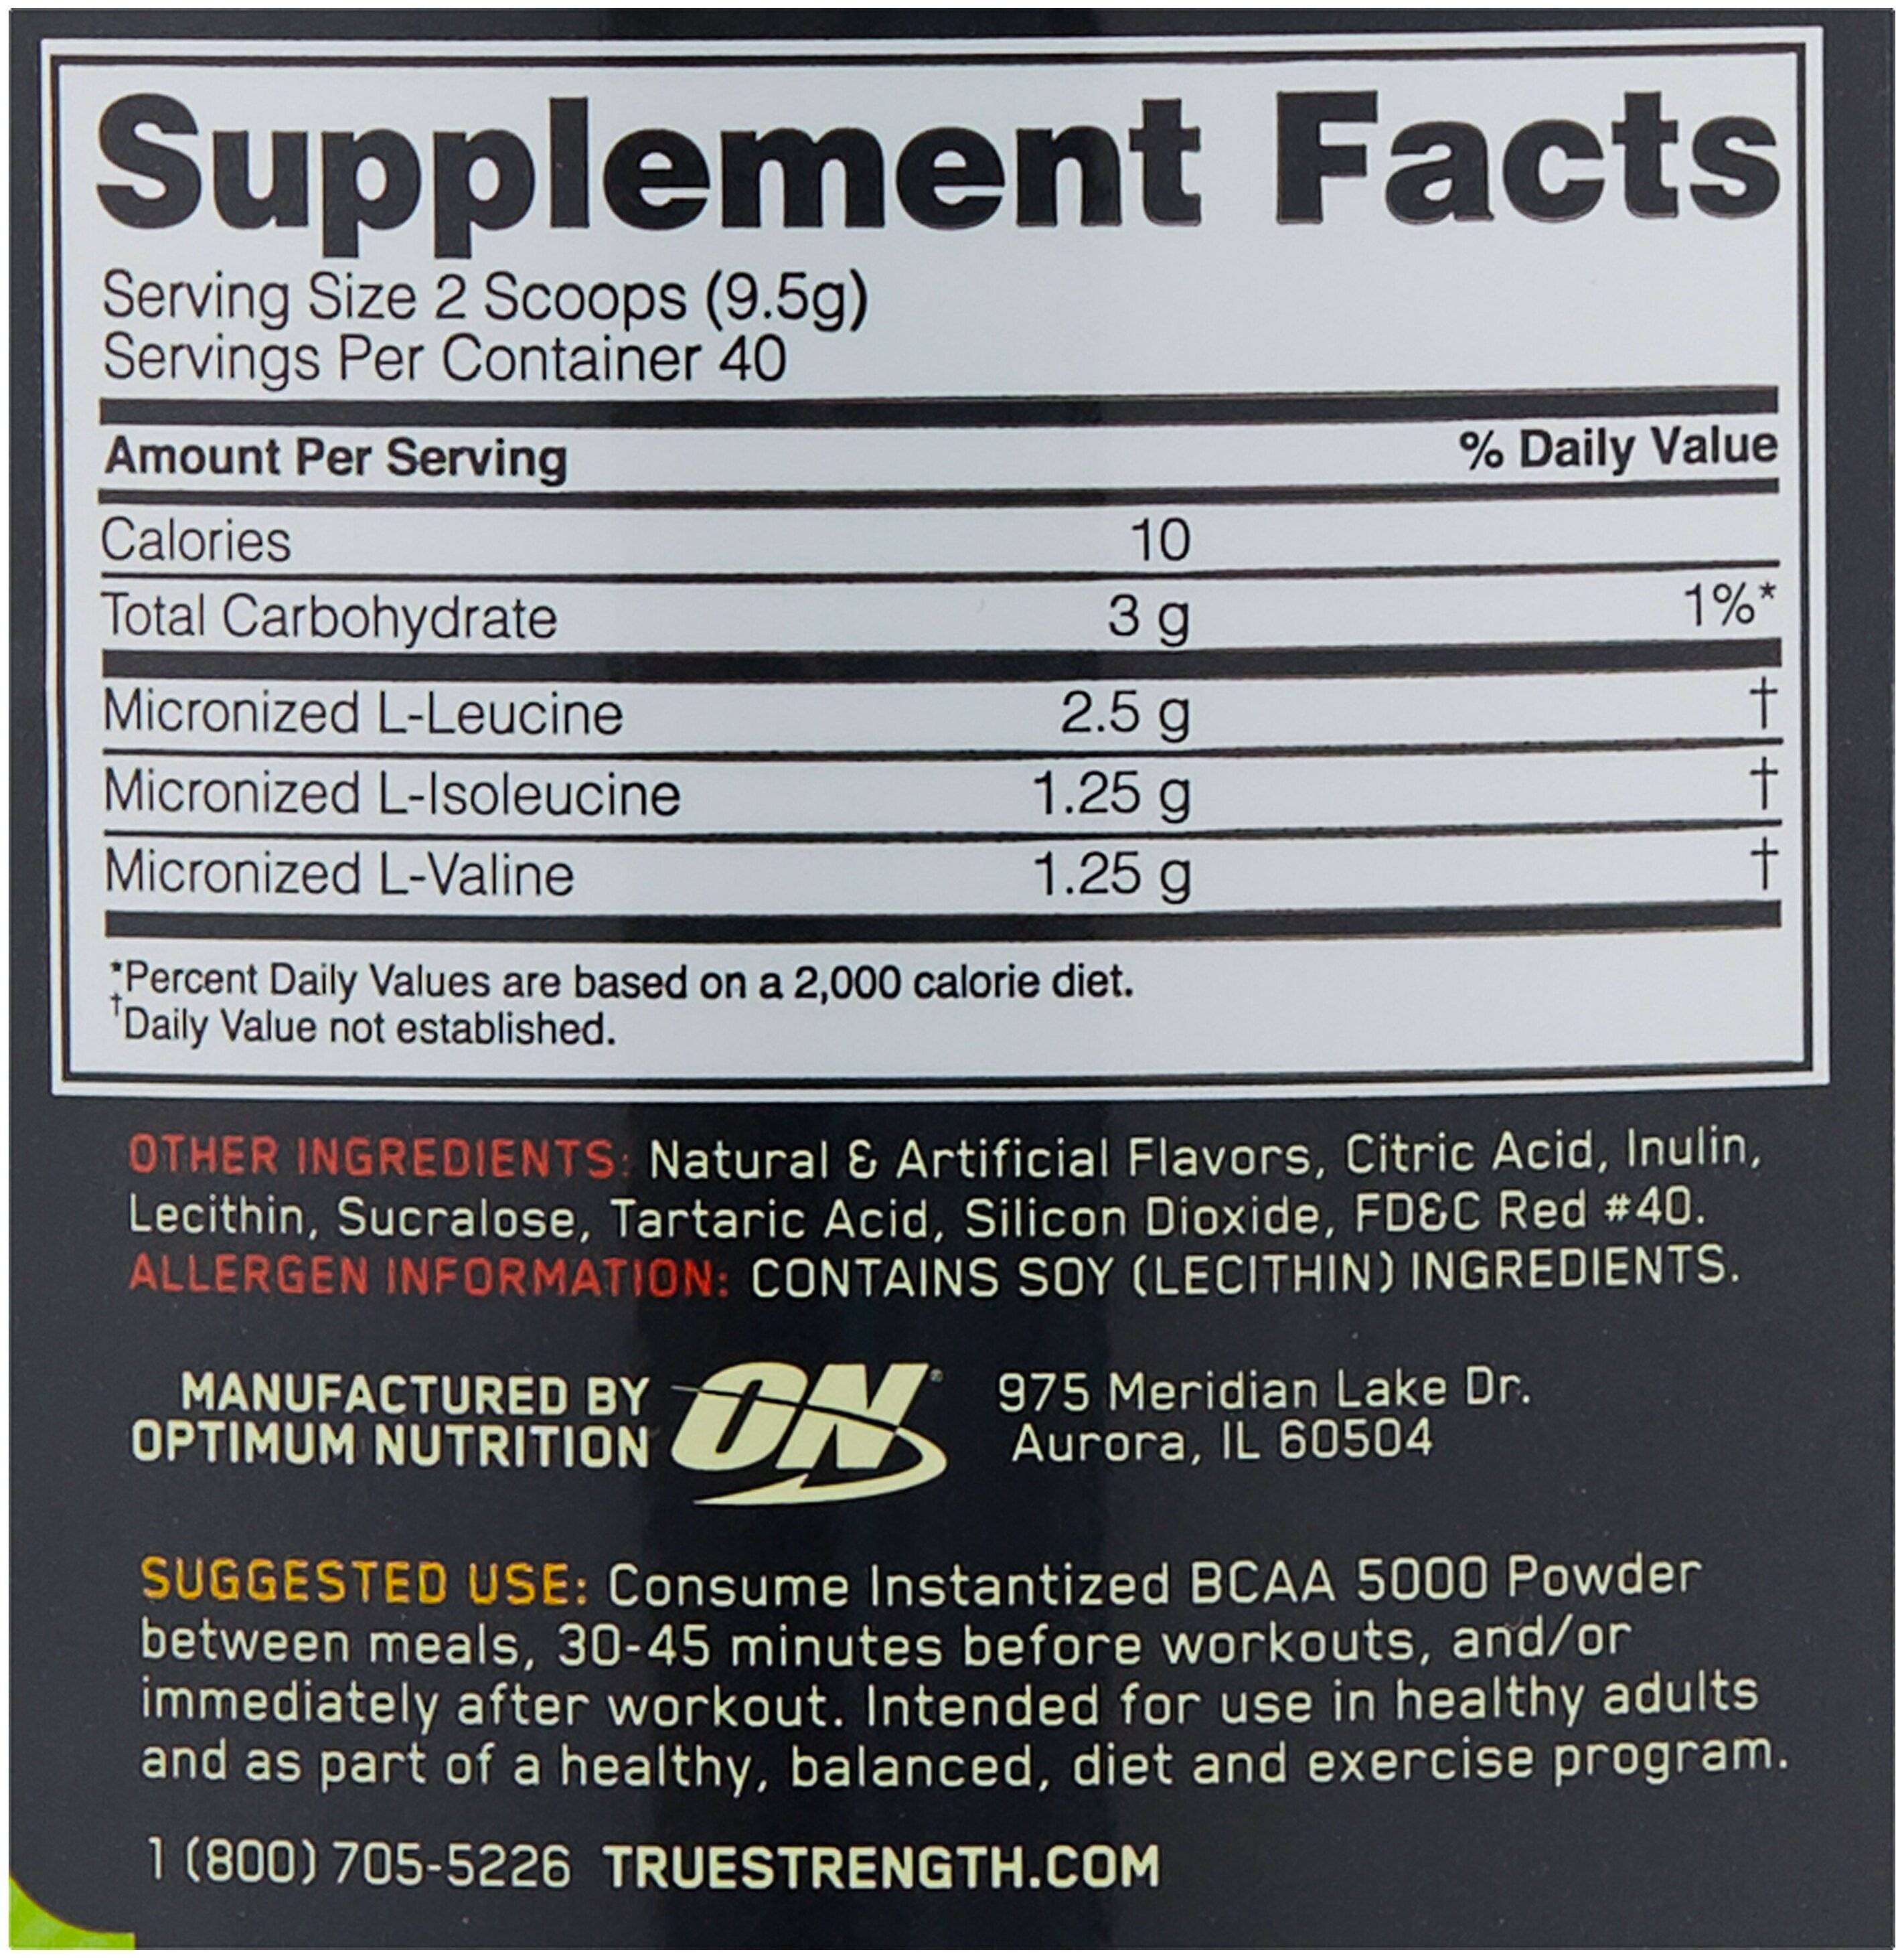 Bcaa 5000 powder от optimum nutrition: отзывы, как принимать